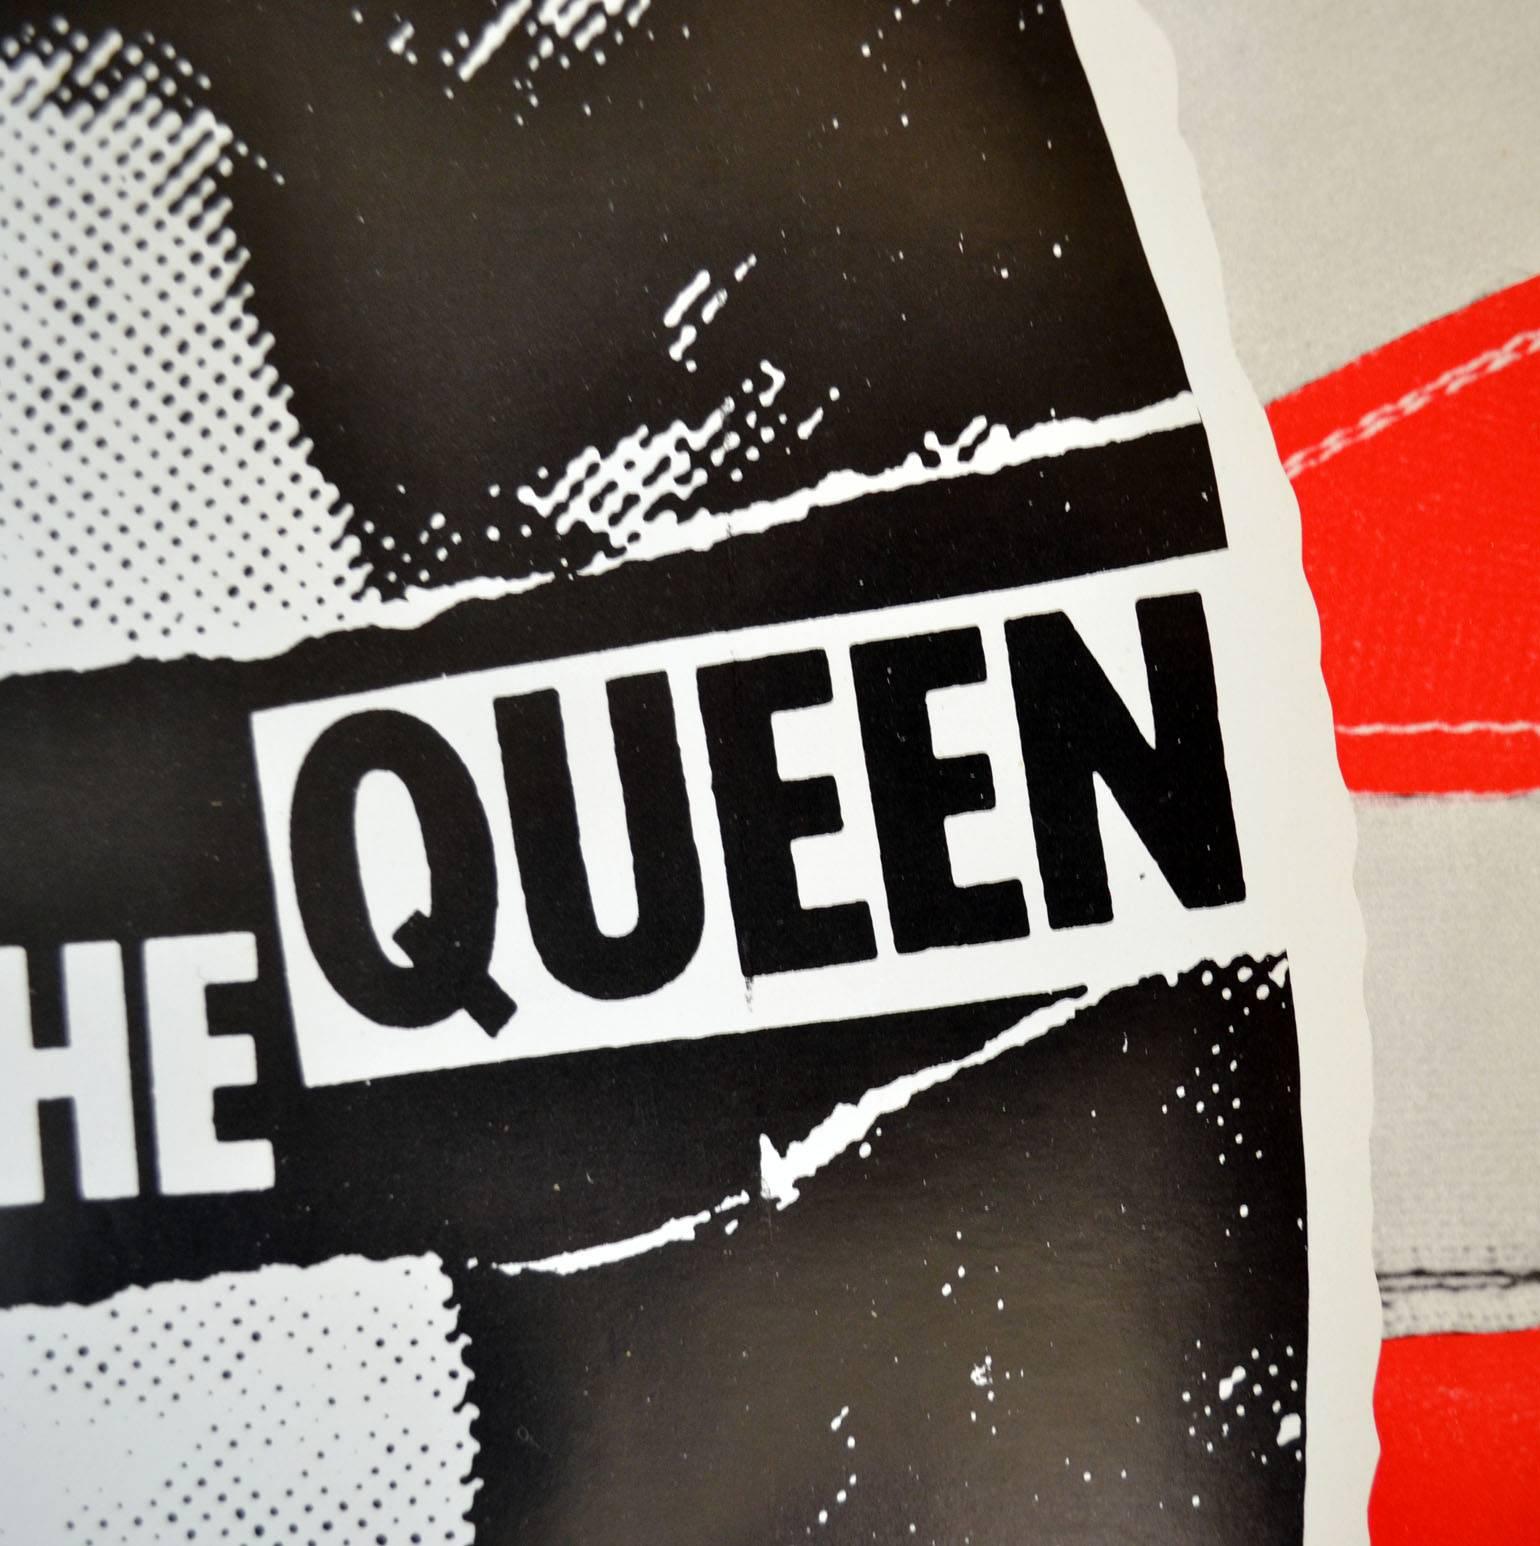 Sex Pistols - Poster promotionnel original de God Save the Queen 1